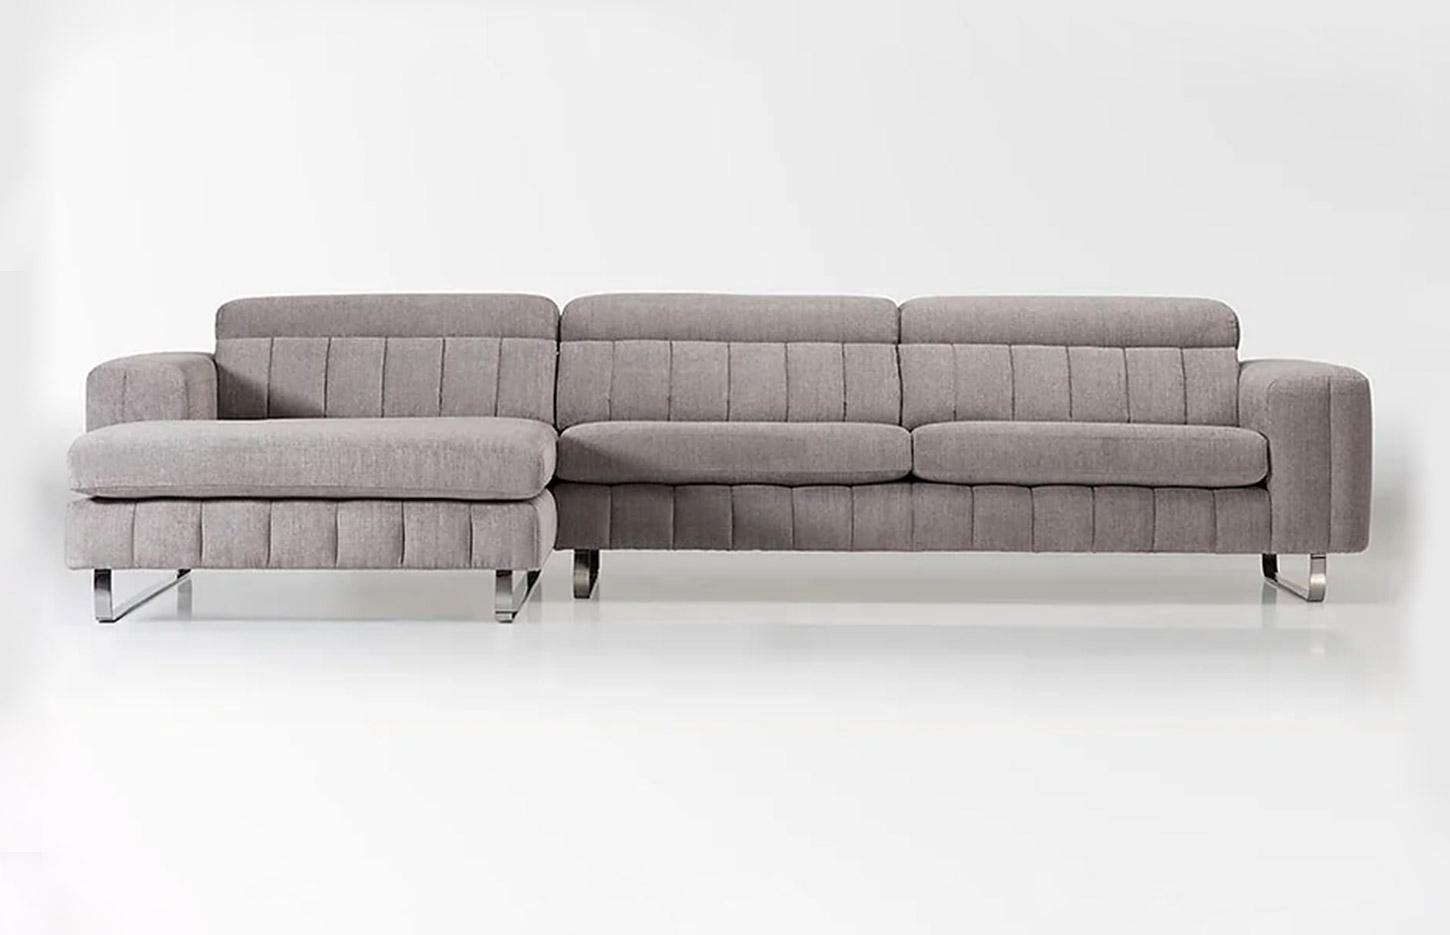 Canapé d\'accueil en tissu capitonné avec têtière réglable, gamme Thabor - France Bureau